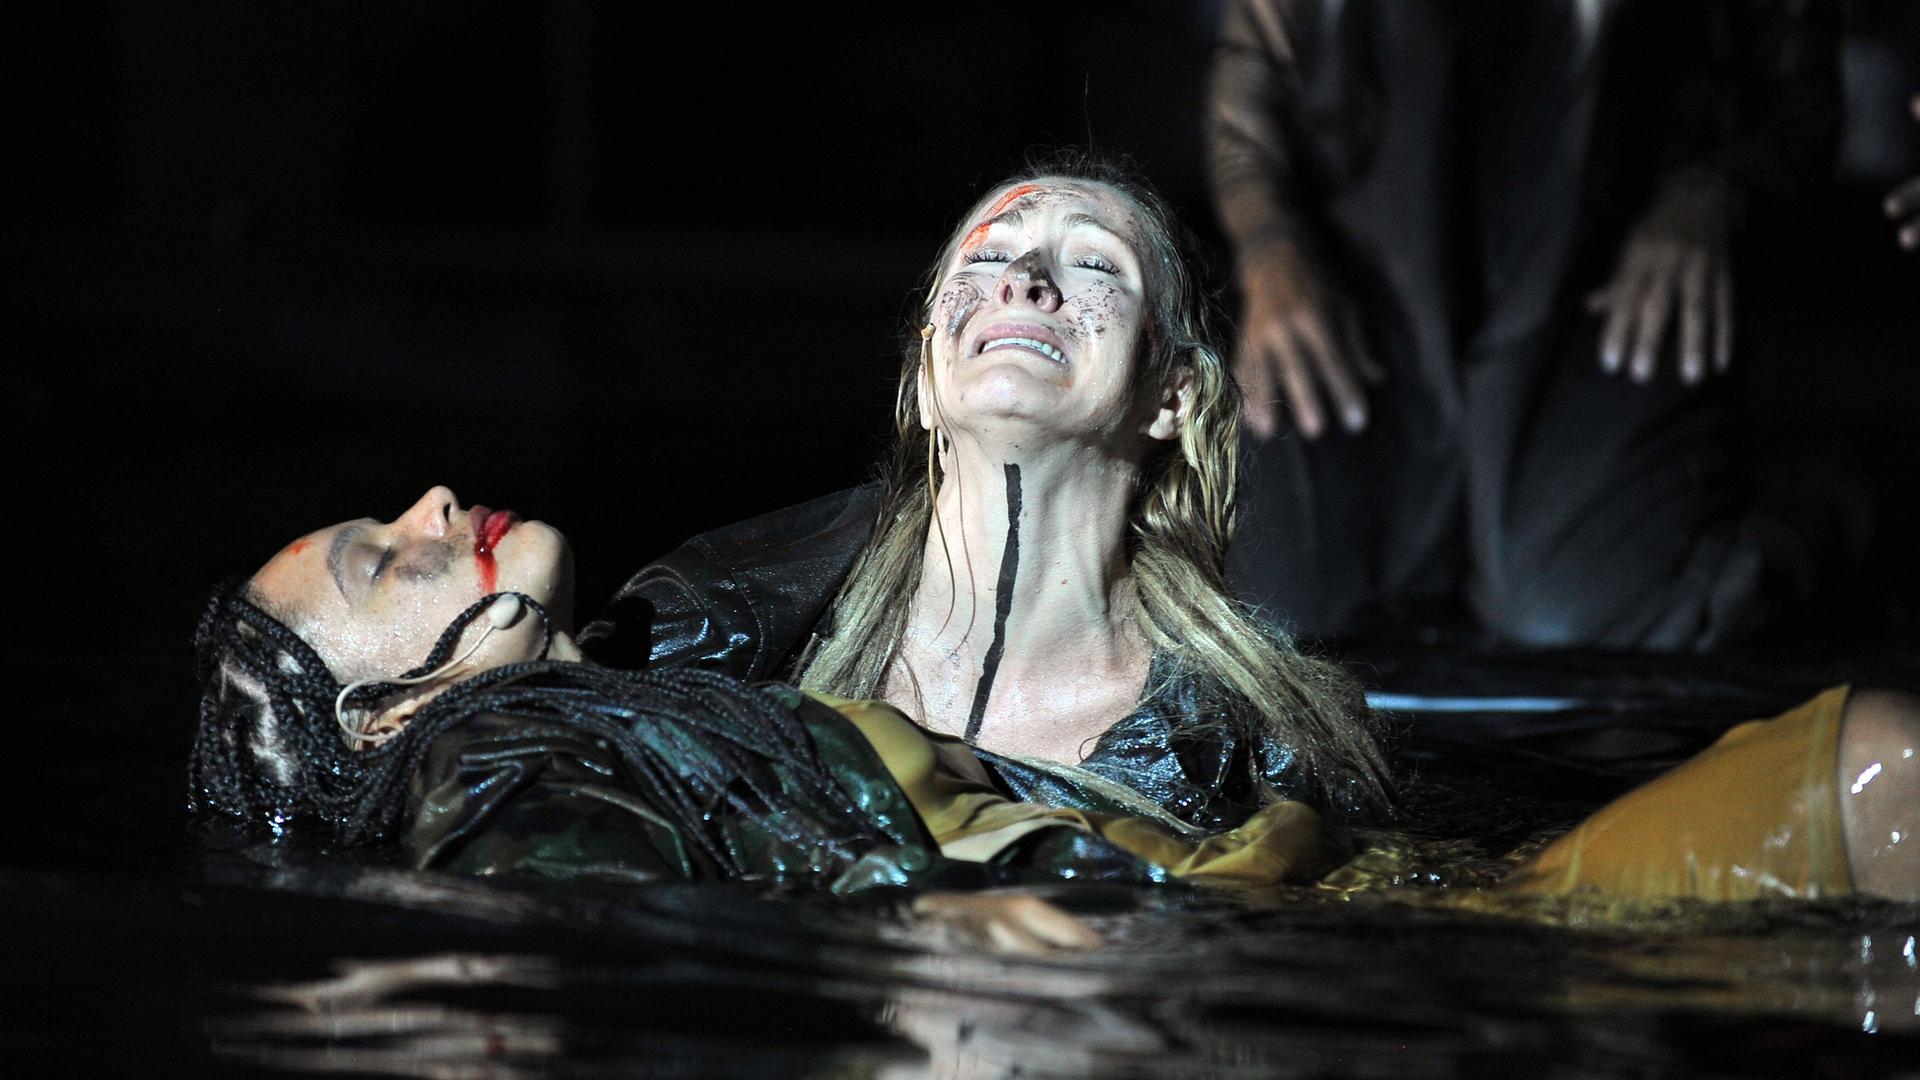 Foto von der Inszenierung: Eine weinende Frau hält eine anscheind tote Frau mit den Armen über Wasser.